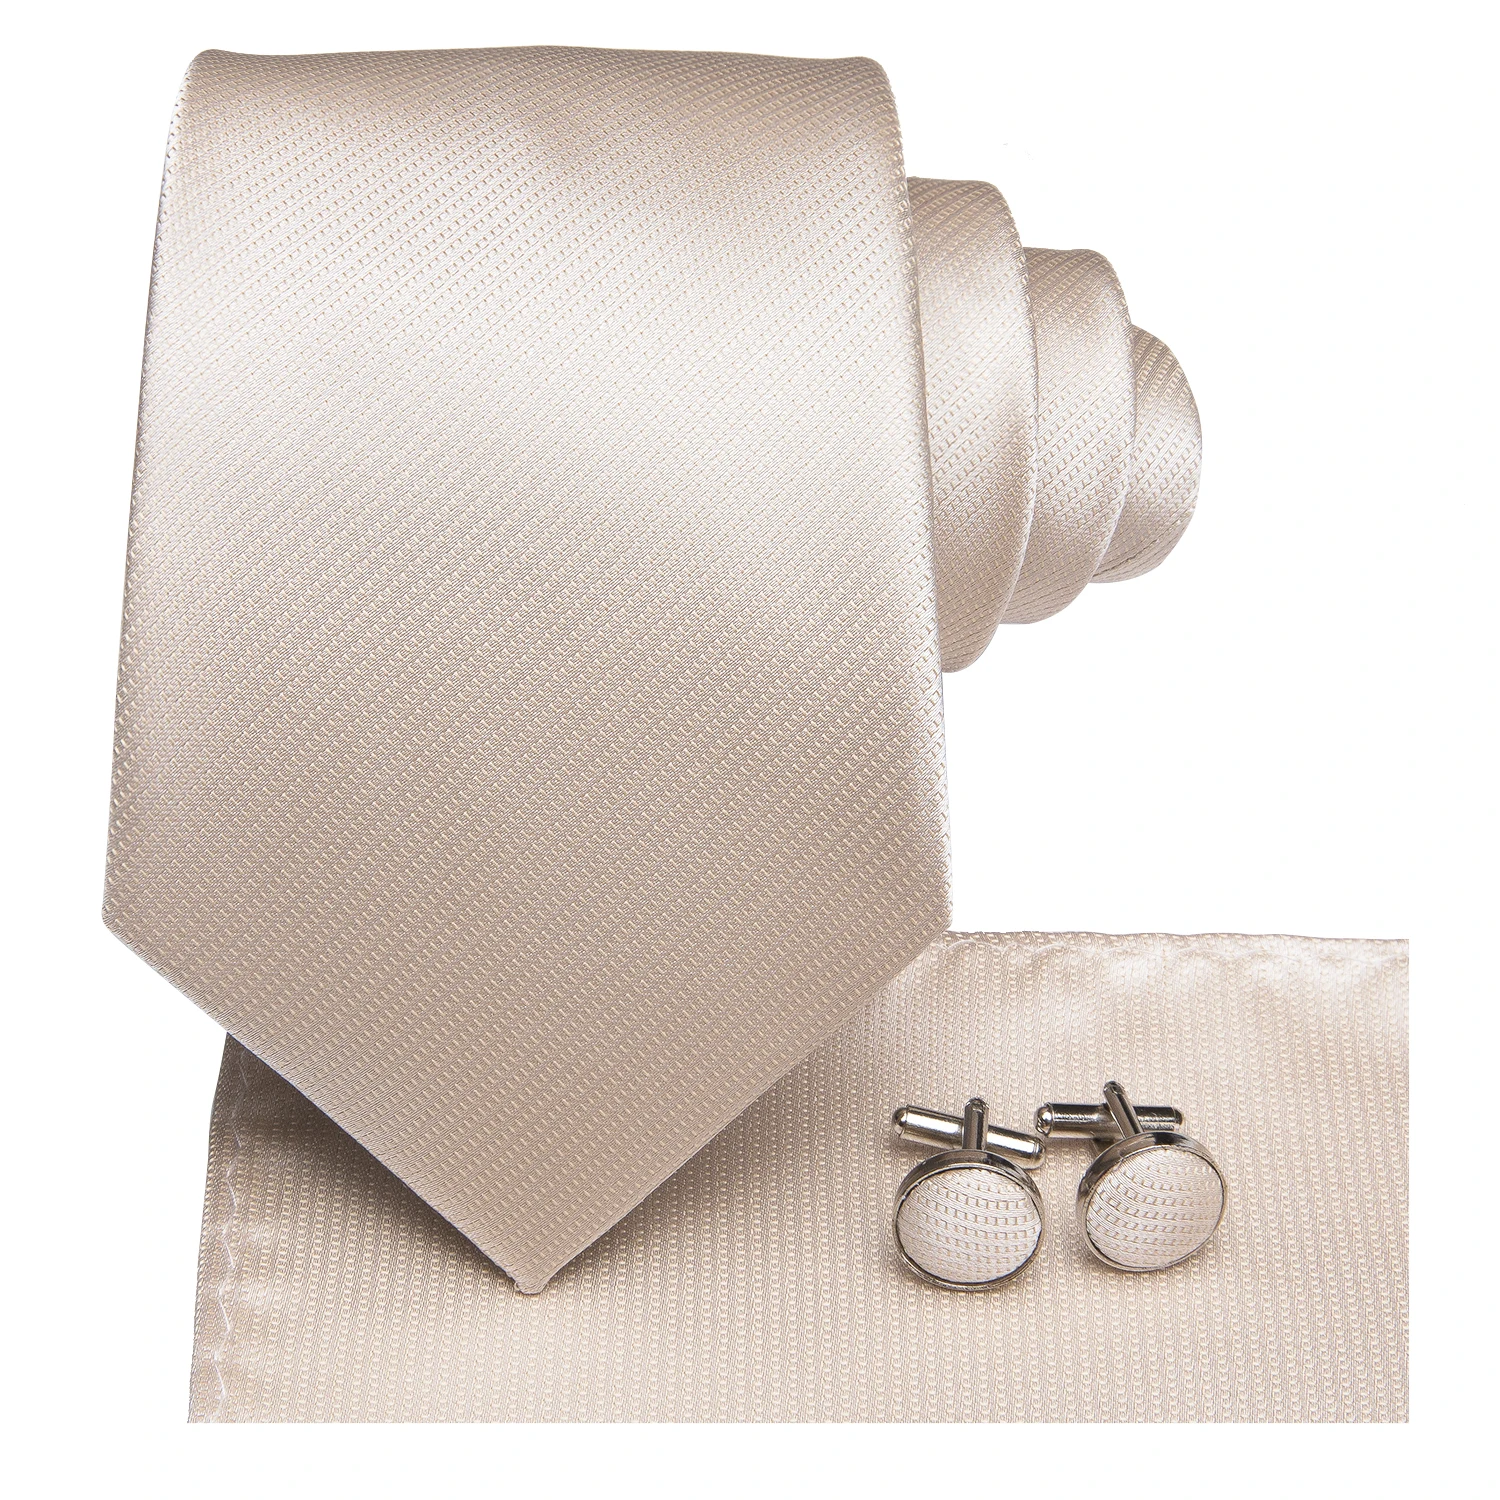 היי-תקשור שמפניה שנהב פרחוני מוצק משי עיצוב חתונה עניבה לגברים איכות הנקי חפתים אופנה Nicktie עסקים Dropshipping - 5